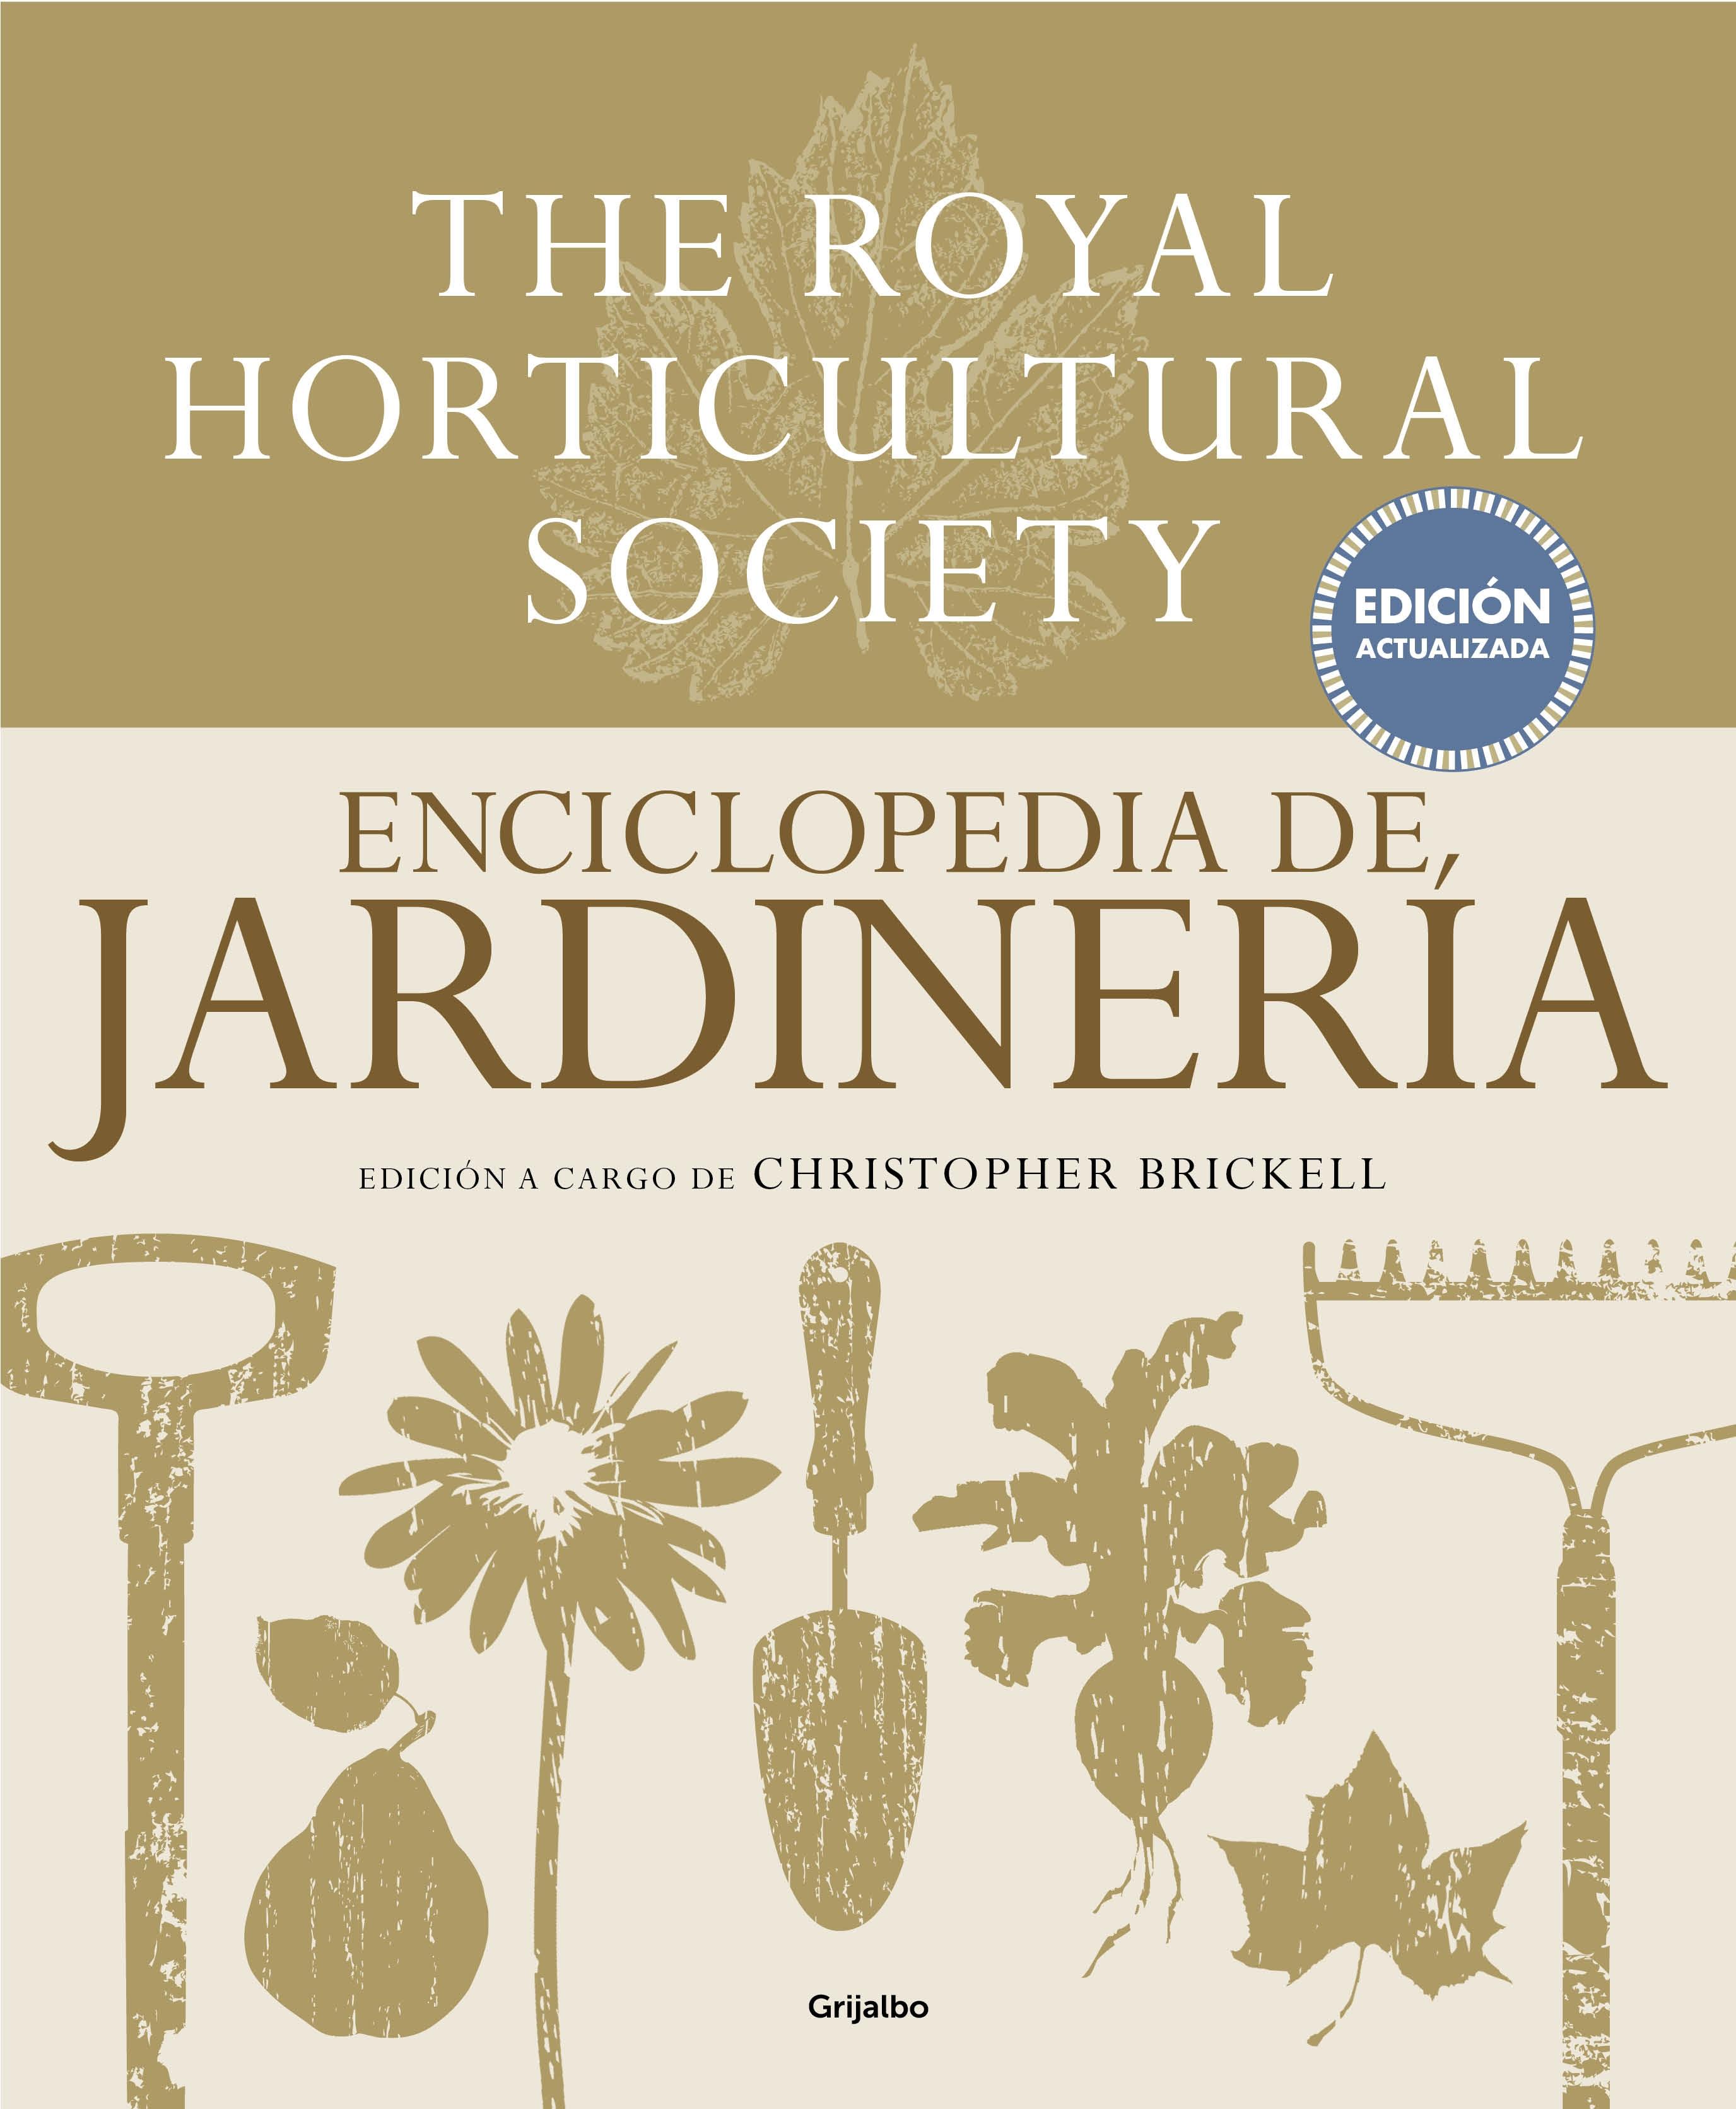 Enciclopedia de Jardinería. The Royal Horticultural Society "Edición Actualizada". 